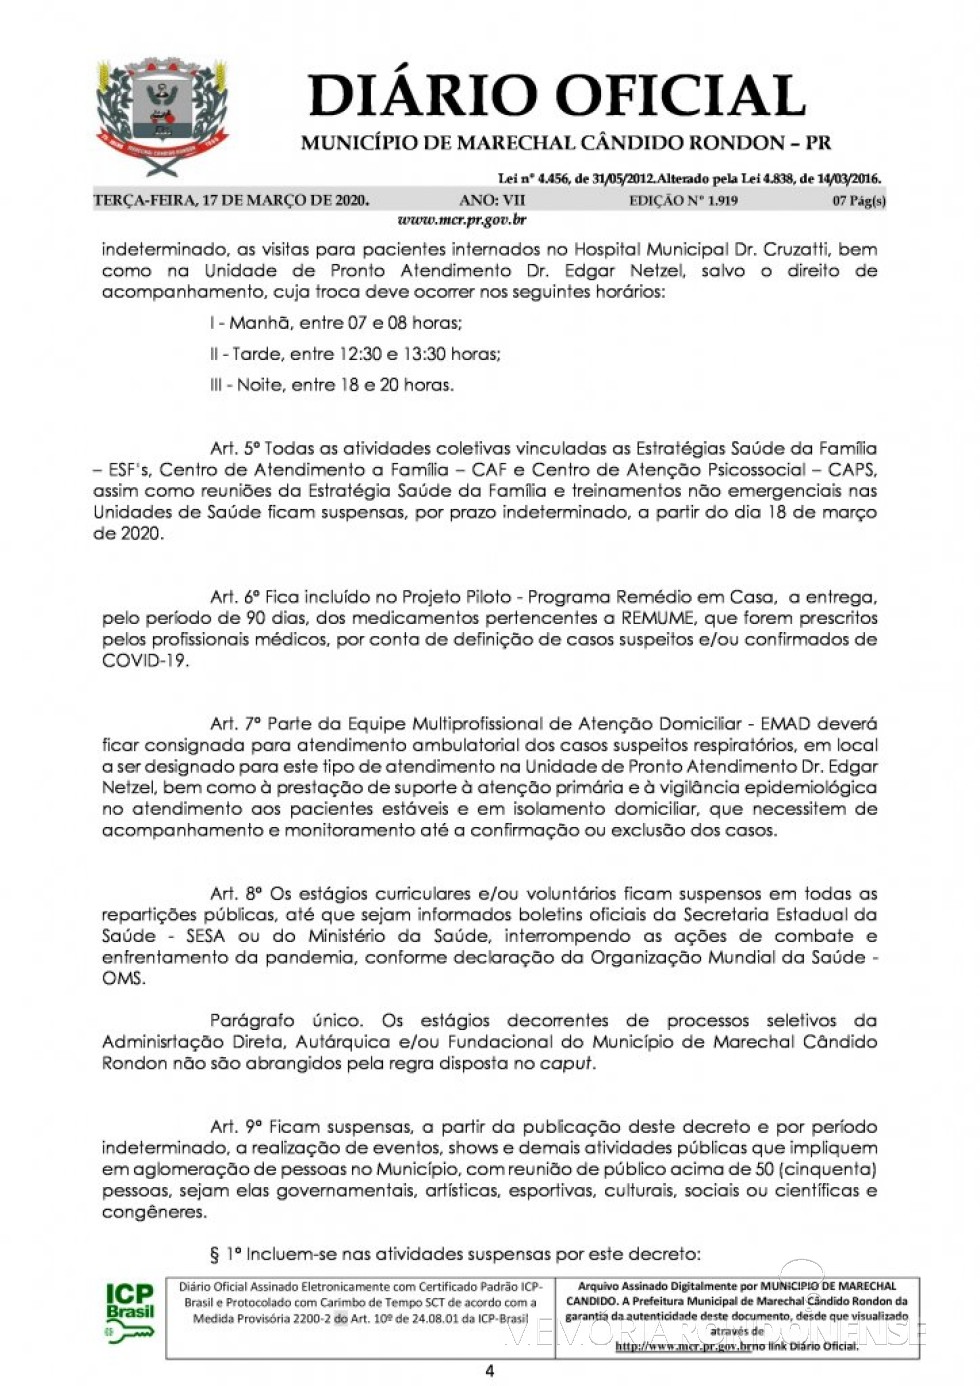 || Página 3 do Decreto nº 071/2020, assinado pelo Poder Executivo de Marechal Cândido Rondon.
Imagem: Acervo Diário Eletrônico do Município - FOTO 17 - 